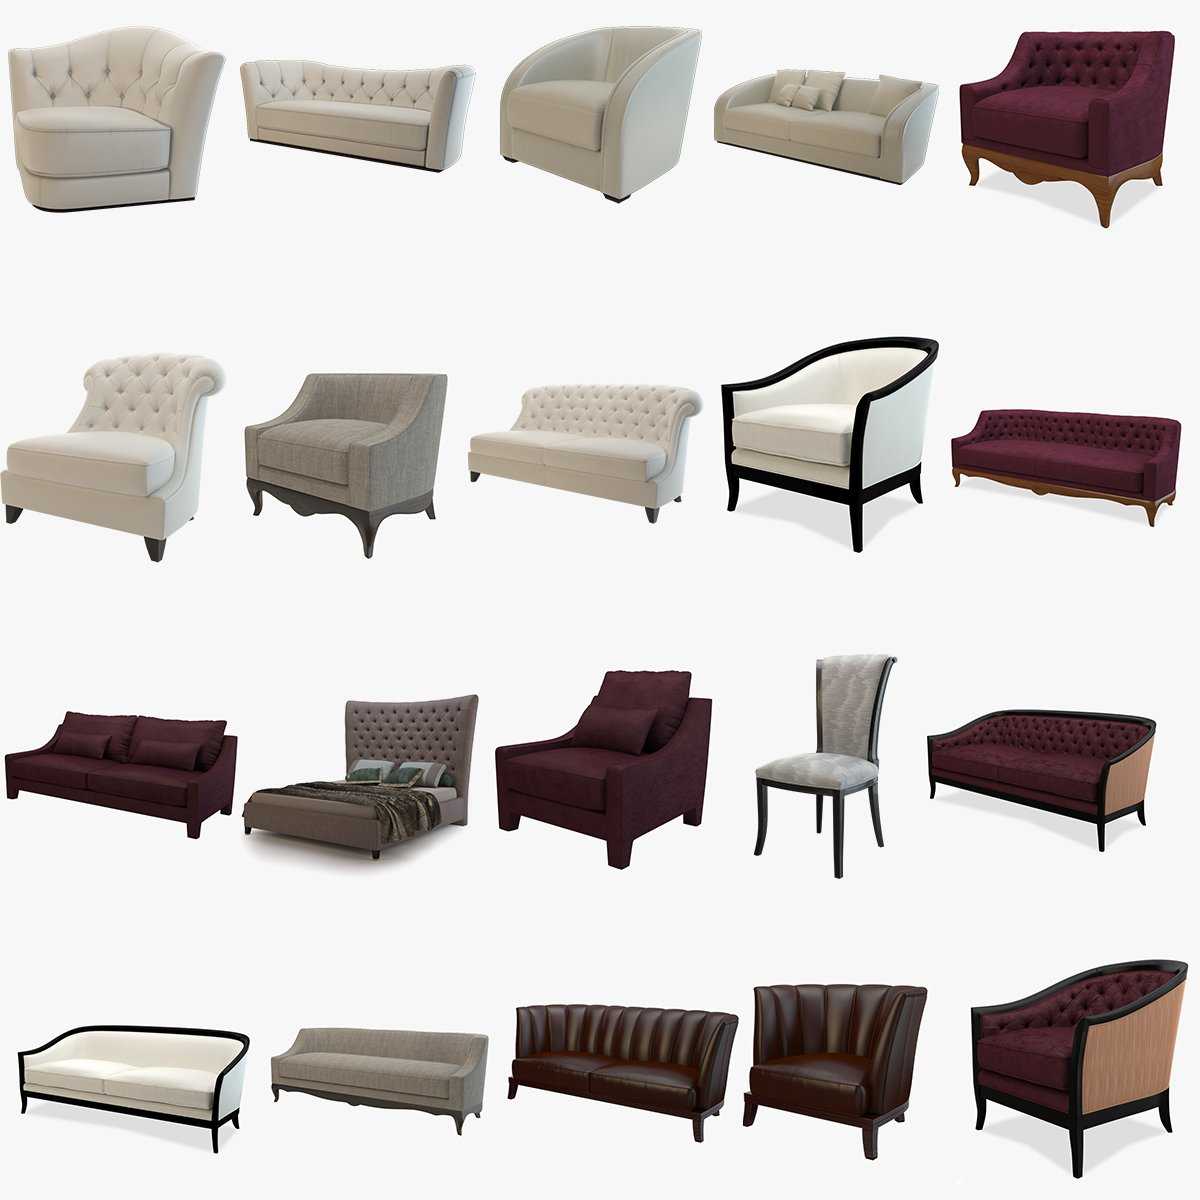 Каталог 3d моделей мебели в БЕСПЛАТНОМ доступе Скачать модель мебели – диван, шкаф, стулья и другие для 3d max, Вы можете прямо с нашего сайта